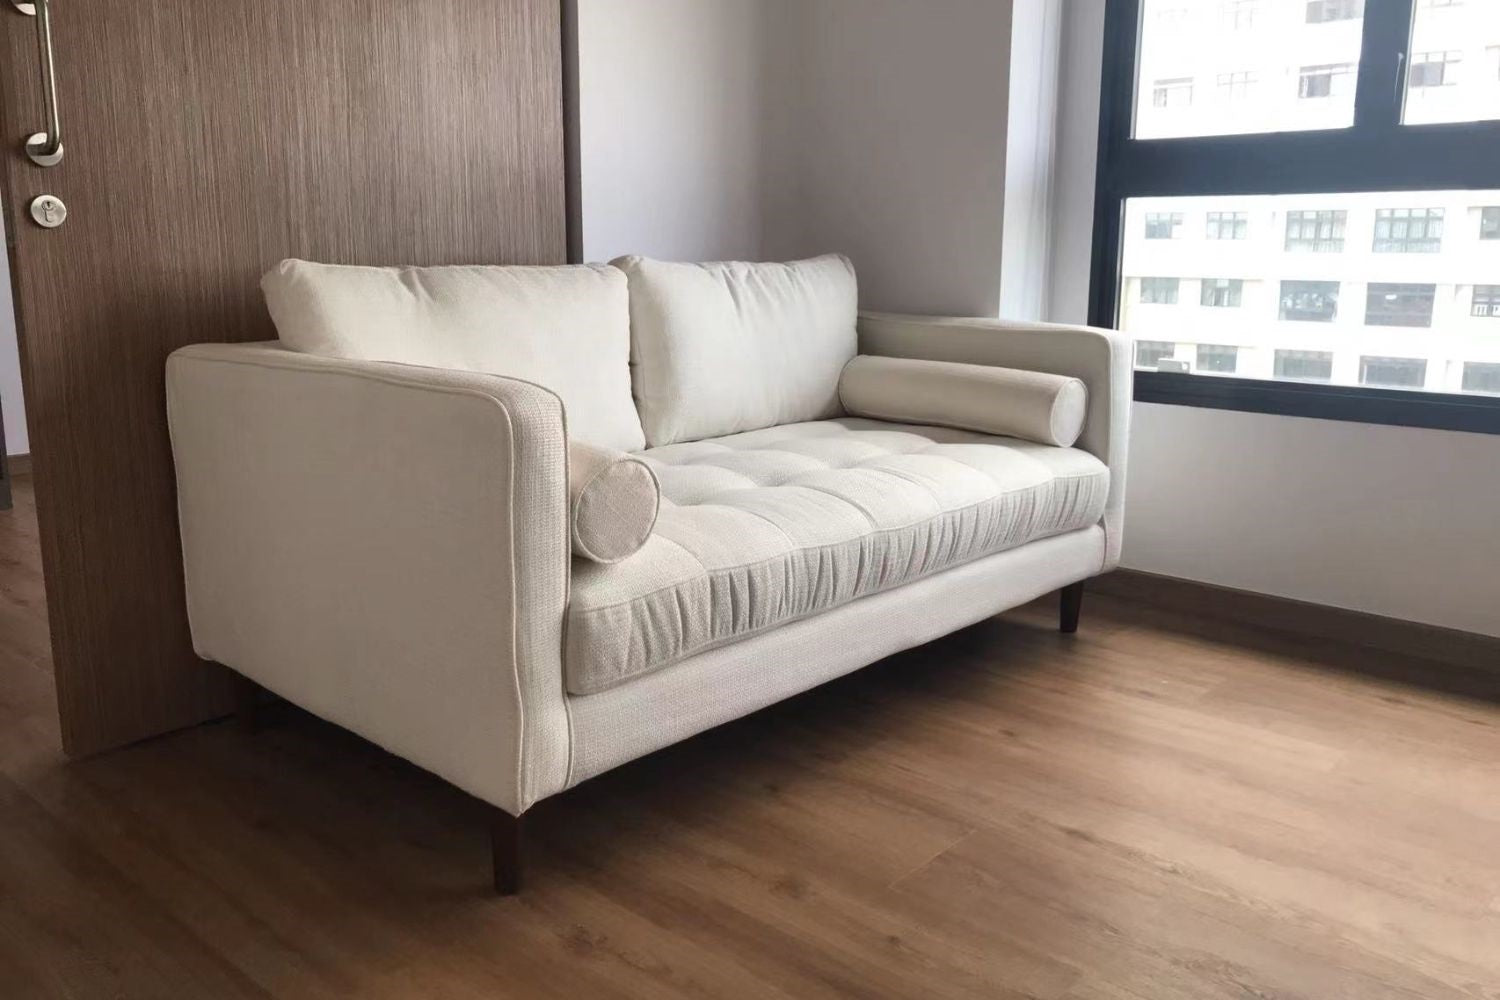 Castle 170cm white fabric sofa in customer's home